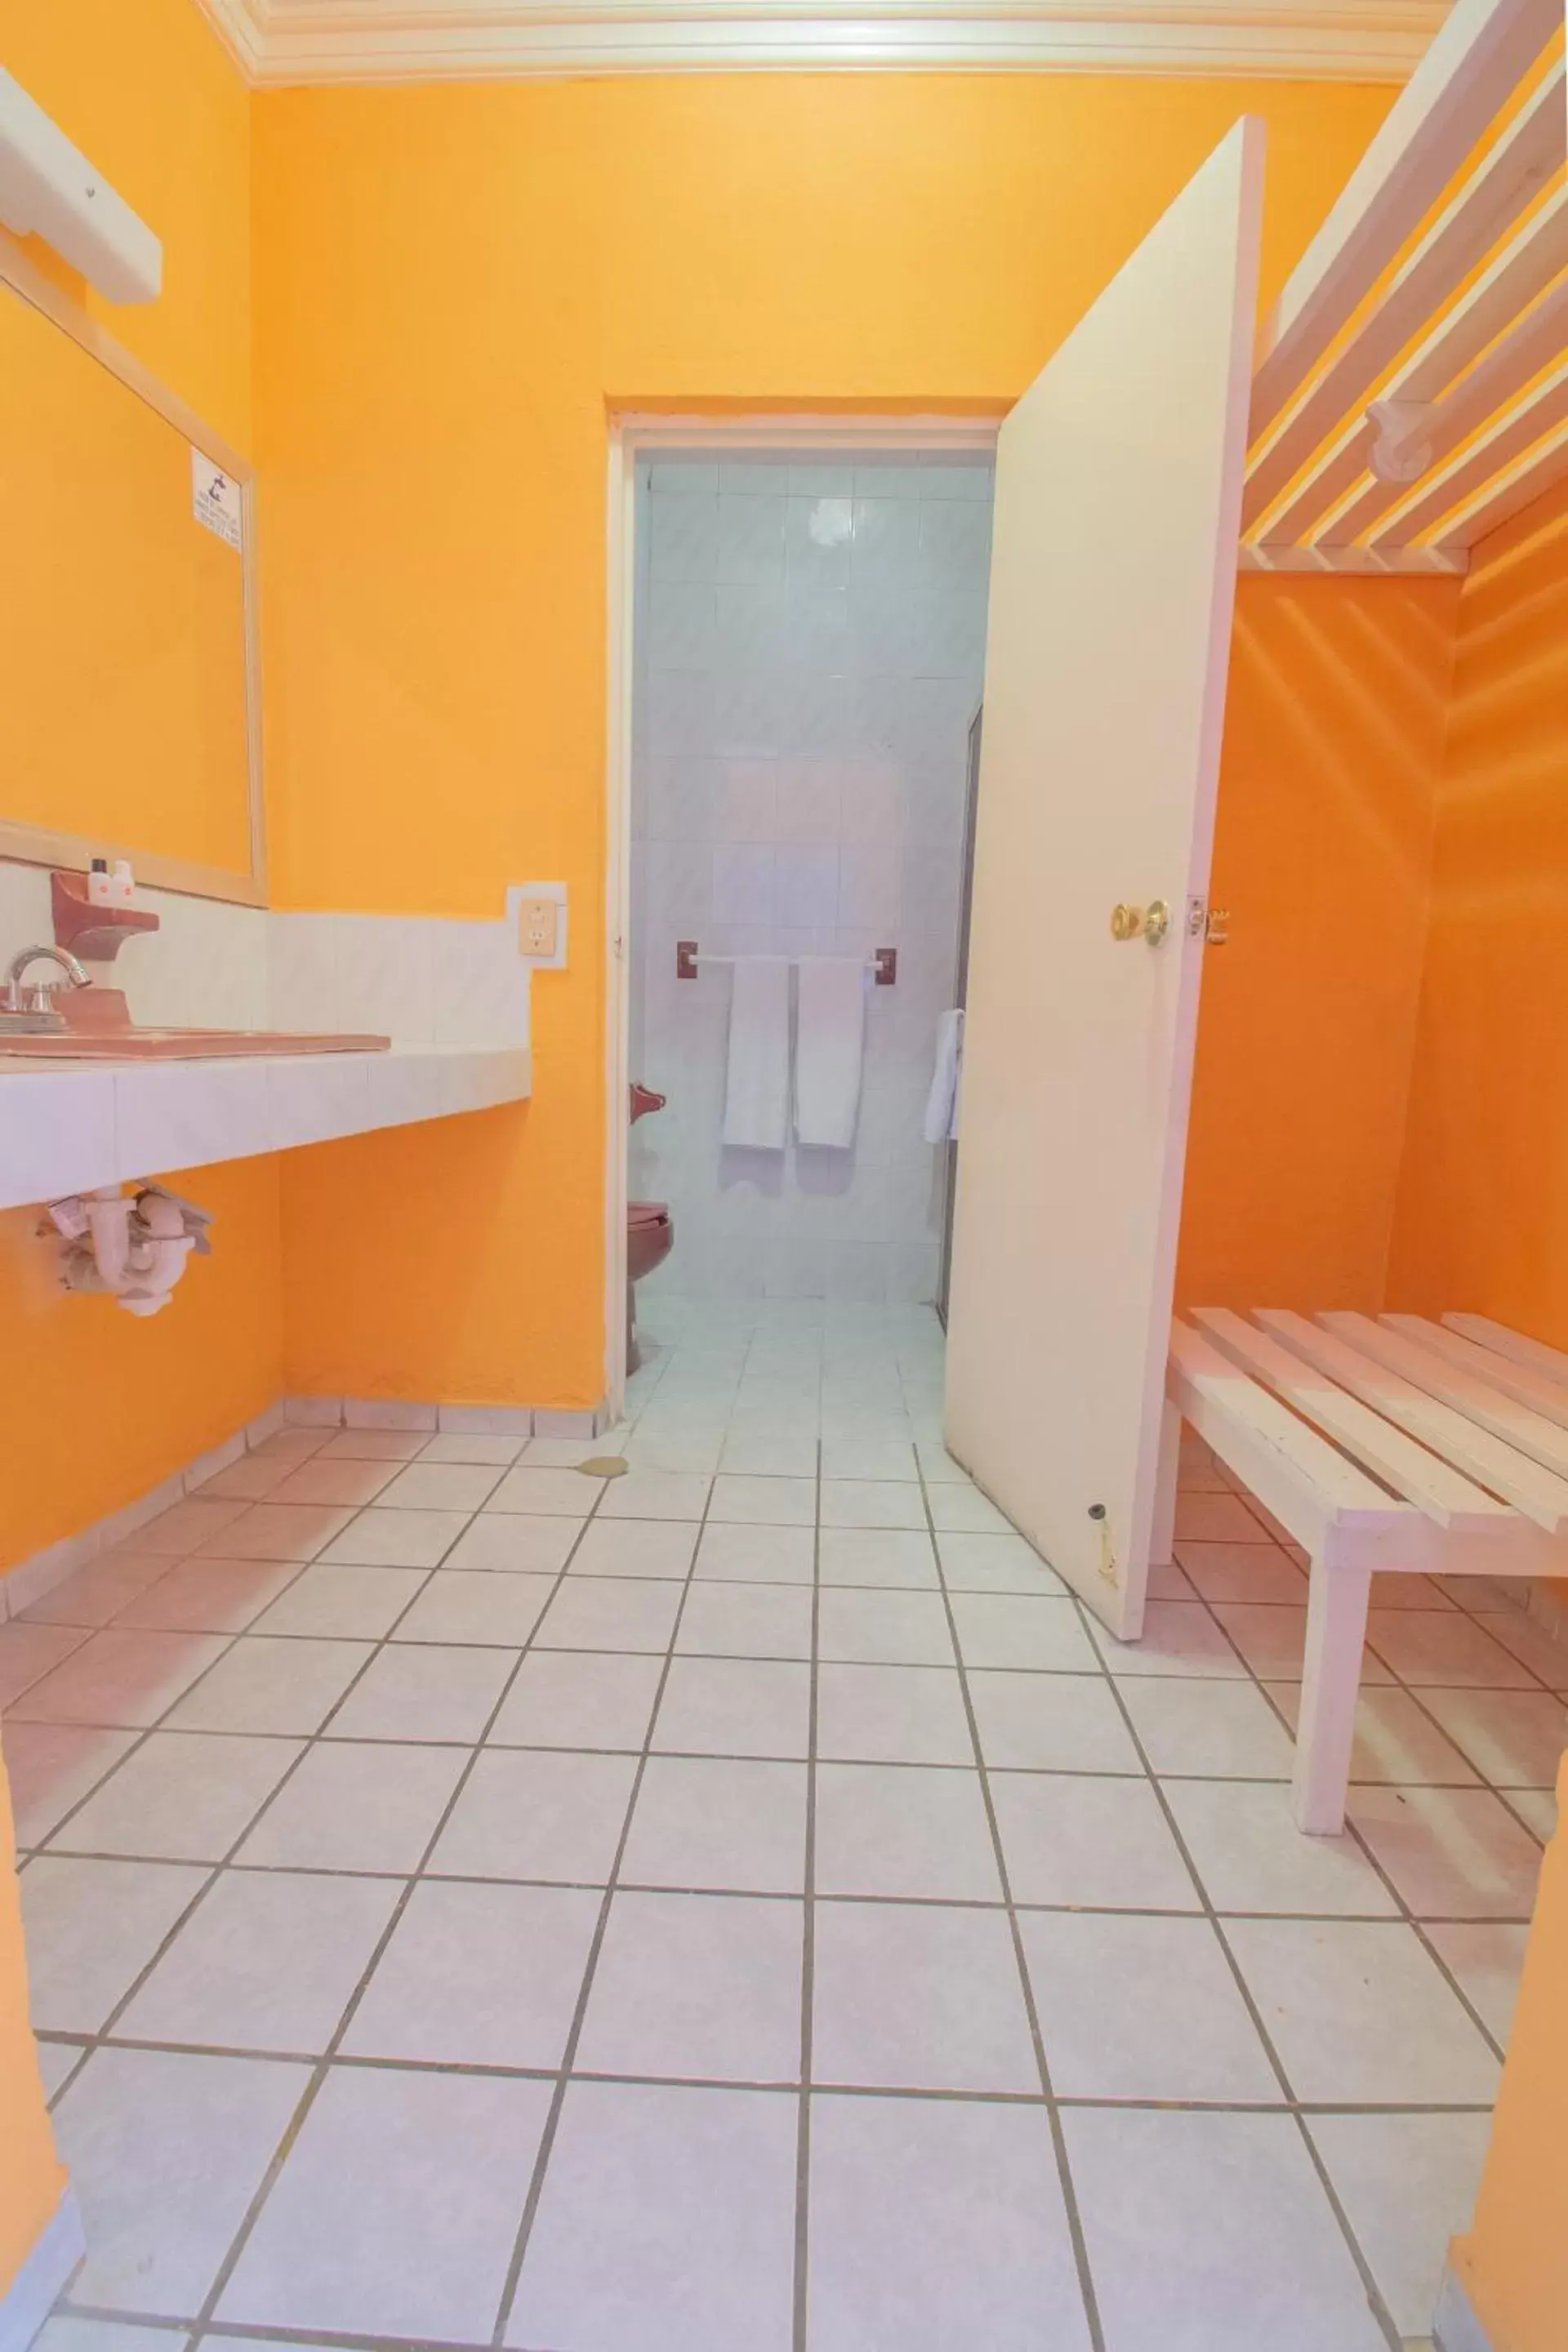 Bathroom in OYO Hotel Casino Del Valle, Matehuala